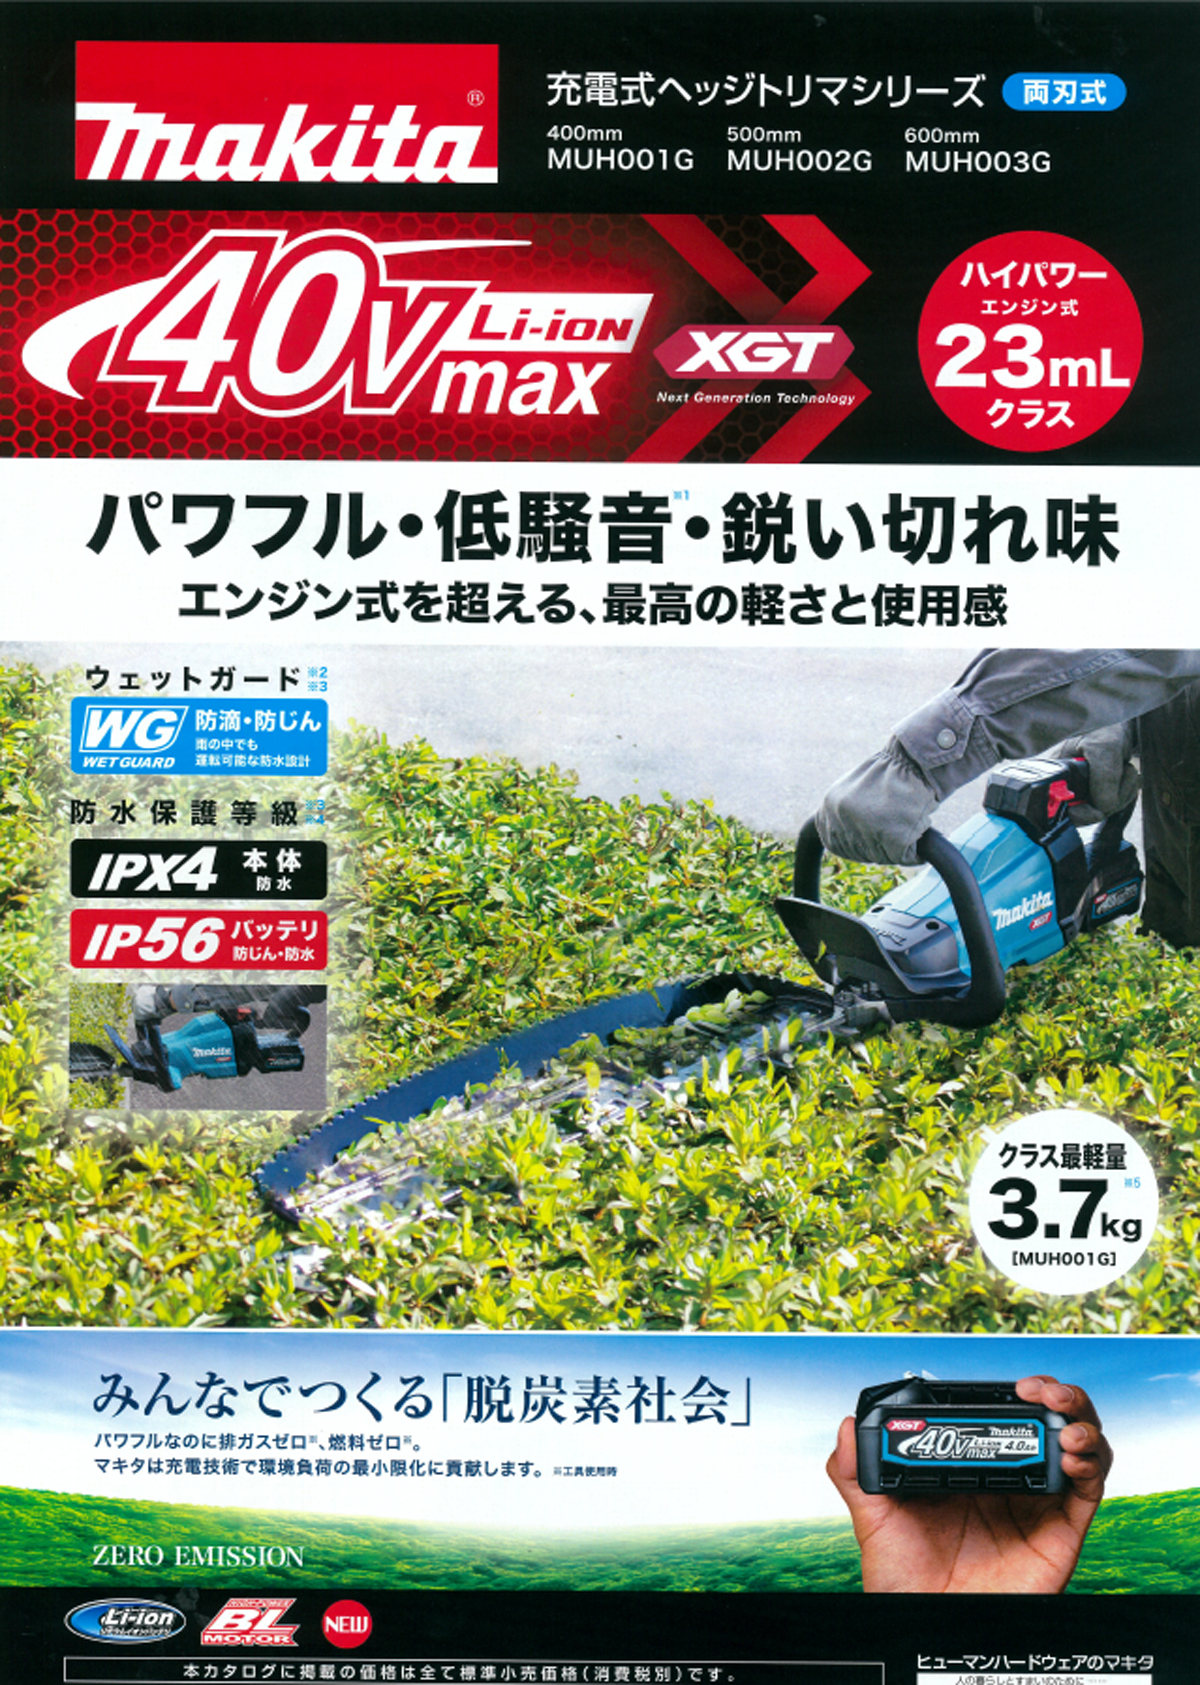 マキタ MUH002GRDX 40Vmax充電式ヘッジトリマ500mm ウエダ金物【公式サイト】